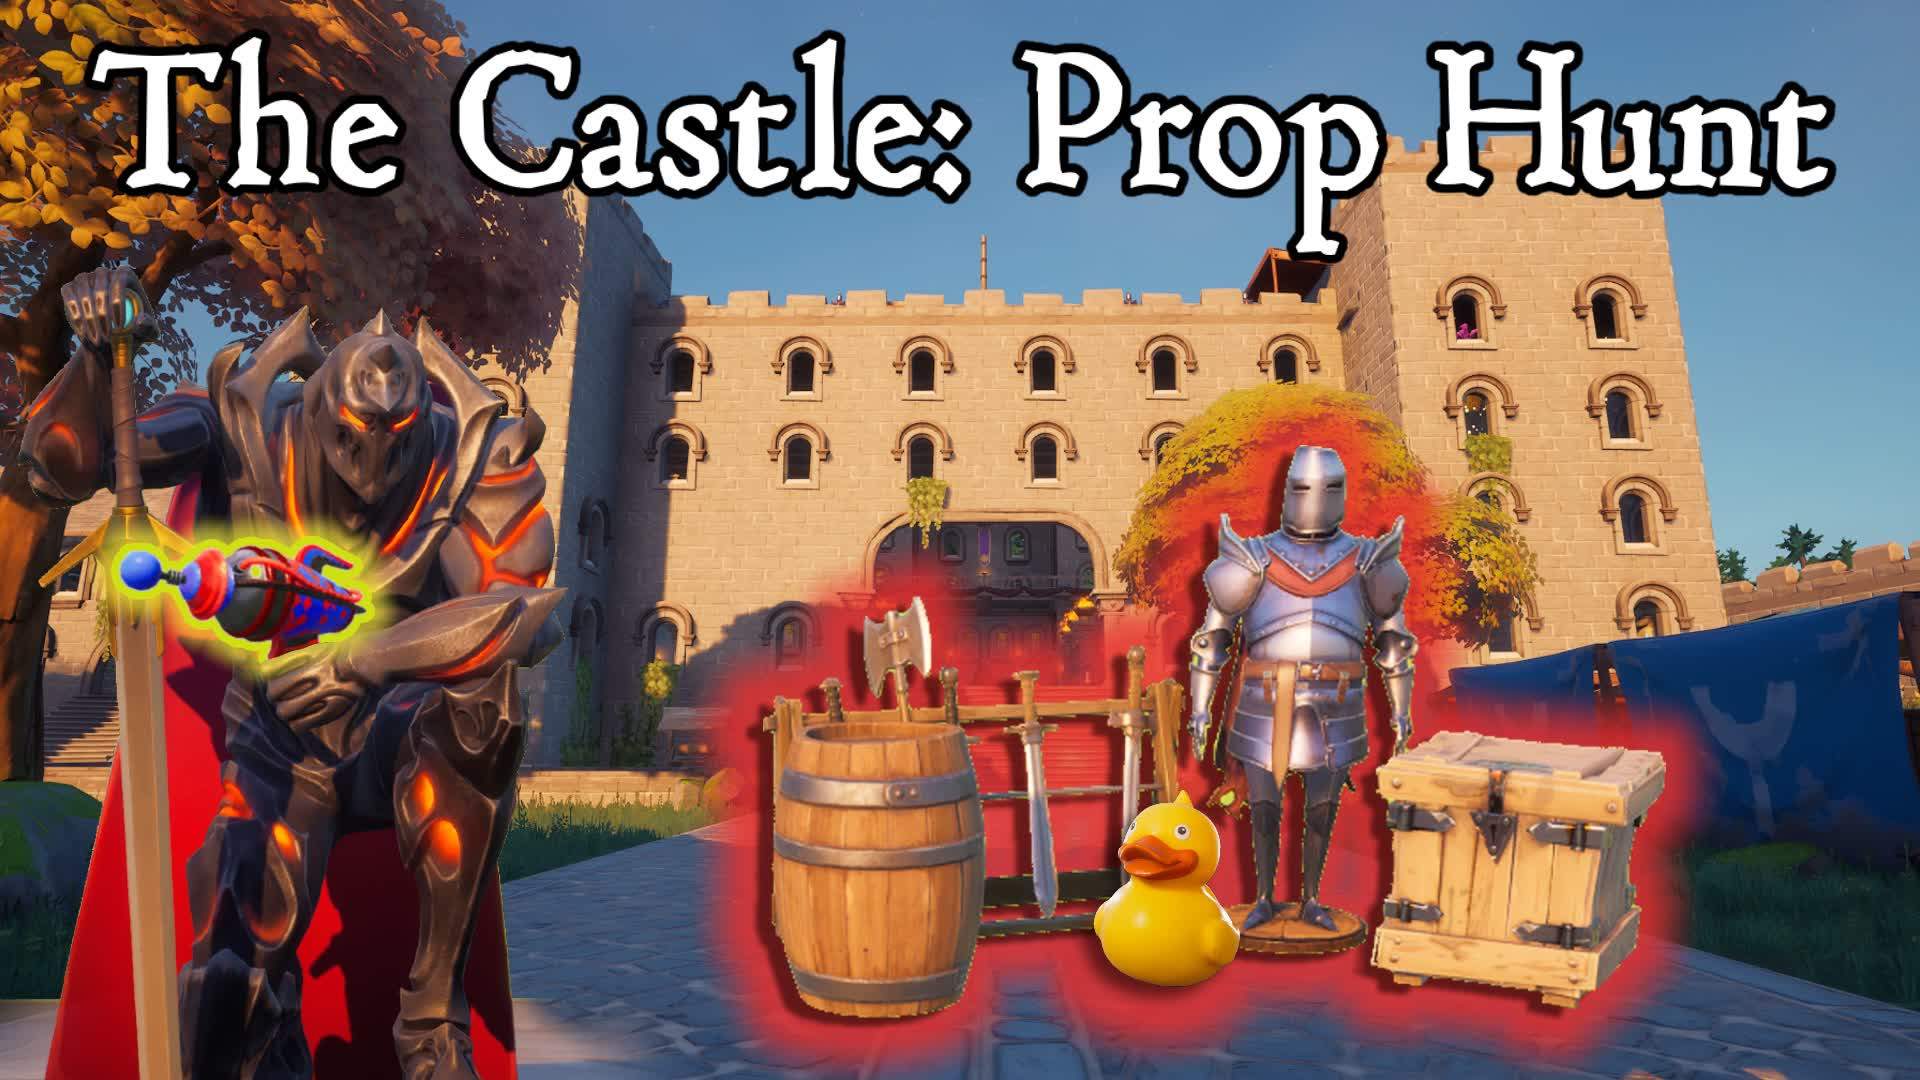 The Castle: Prop Hunt